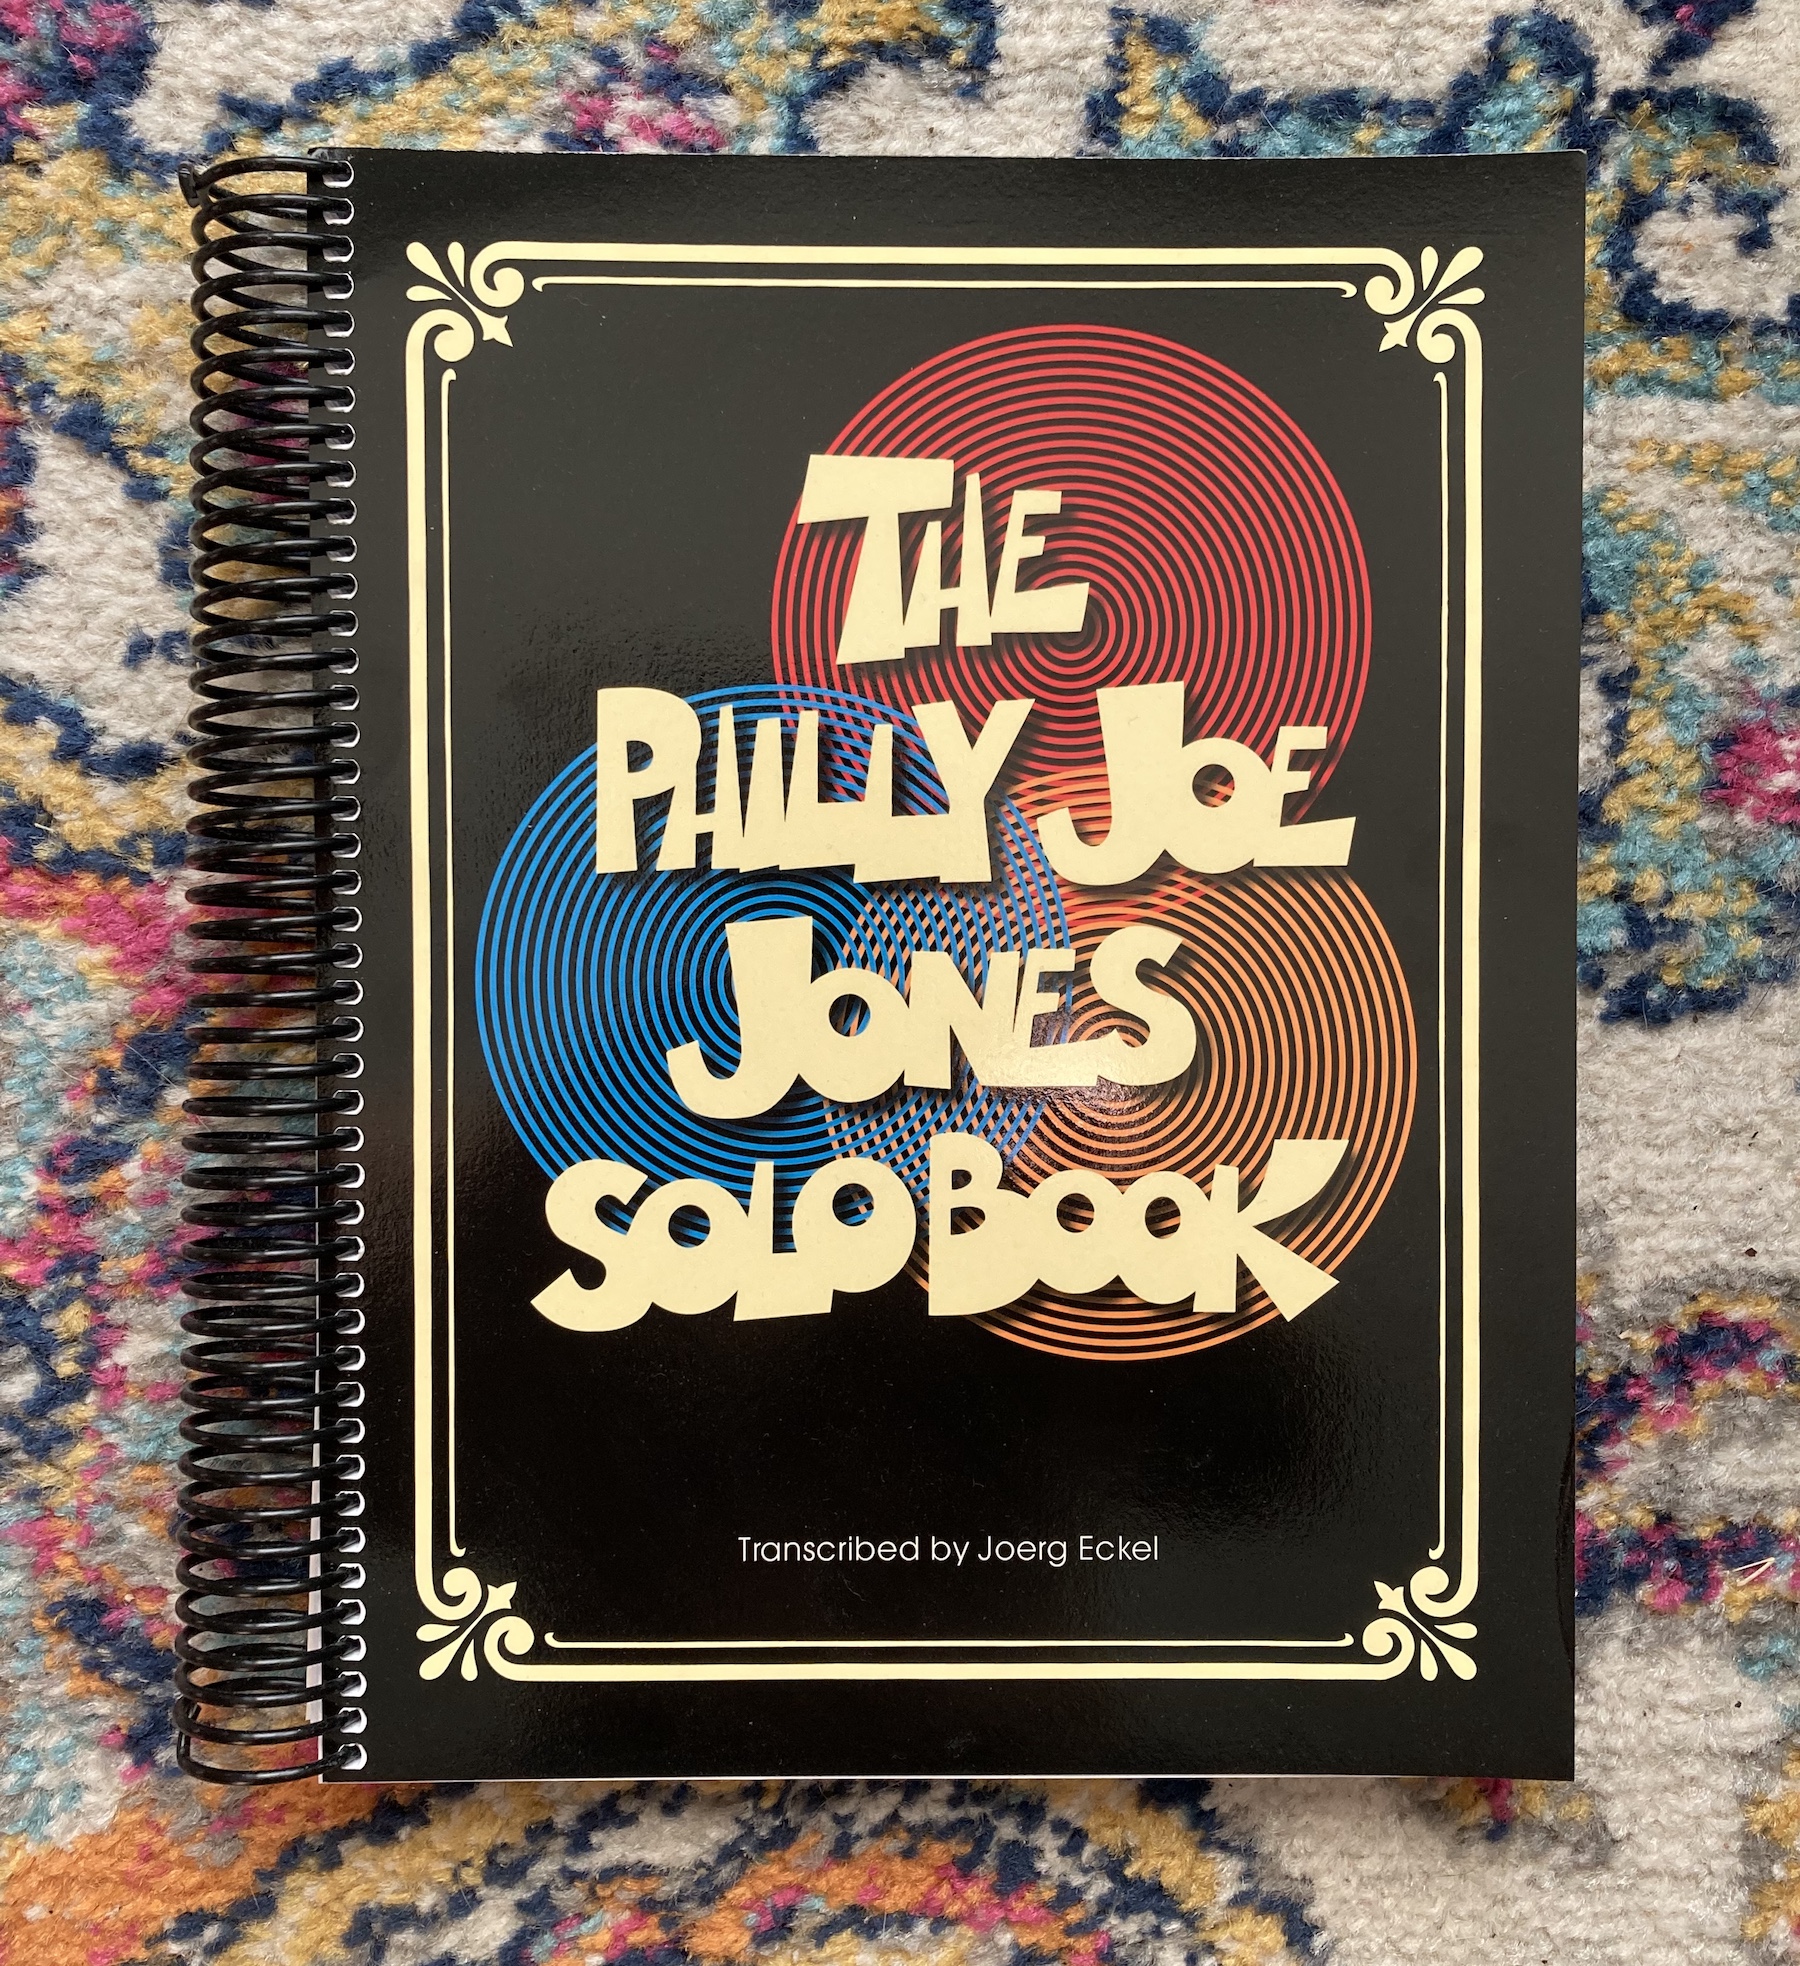 Philly Joe Jones Solo Book (update) - Practicing Drummer